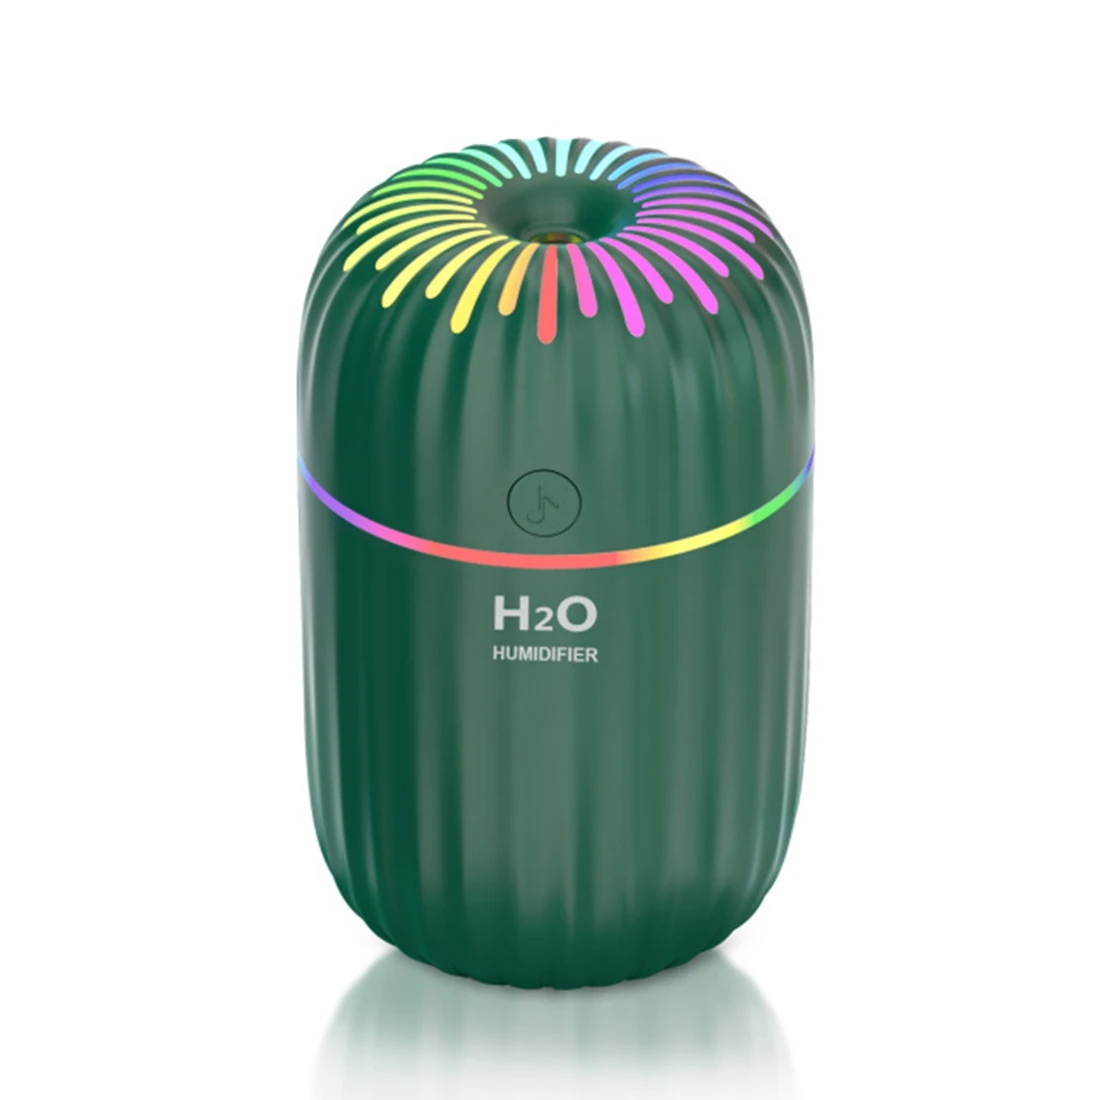 

300Ml Electric Air Humidifier Aroma Oil Diffuser Purifier Silent Mini USB Car Air Freshener Cool Mist Sprayer Green